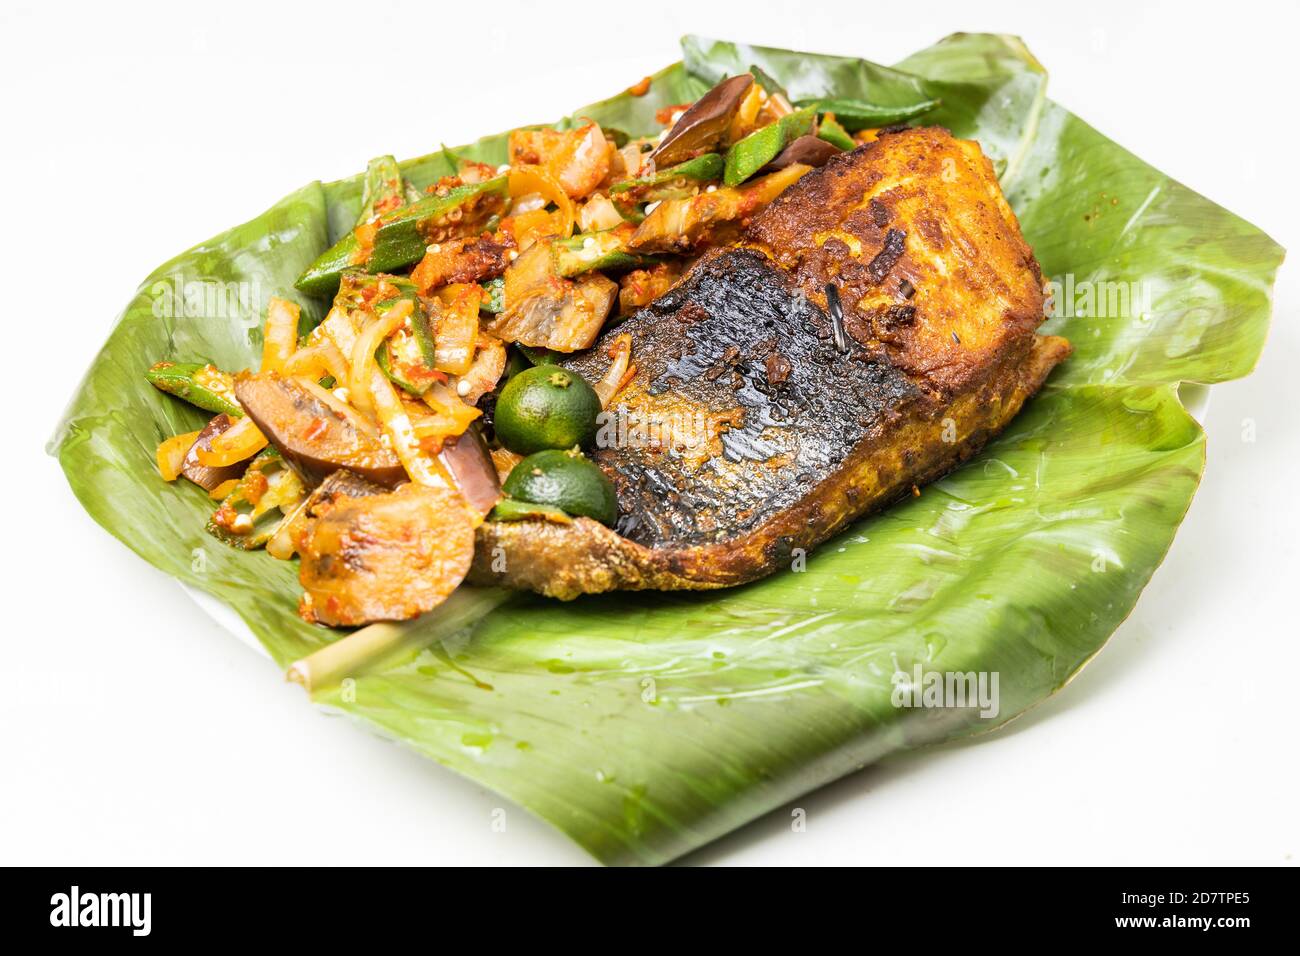 Populaire poisson grillé aux épices et légumes servi dessus feuille de banane Banque D'Images